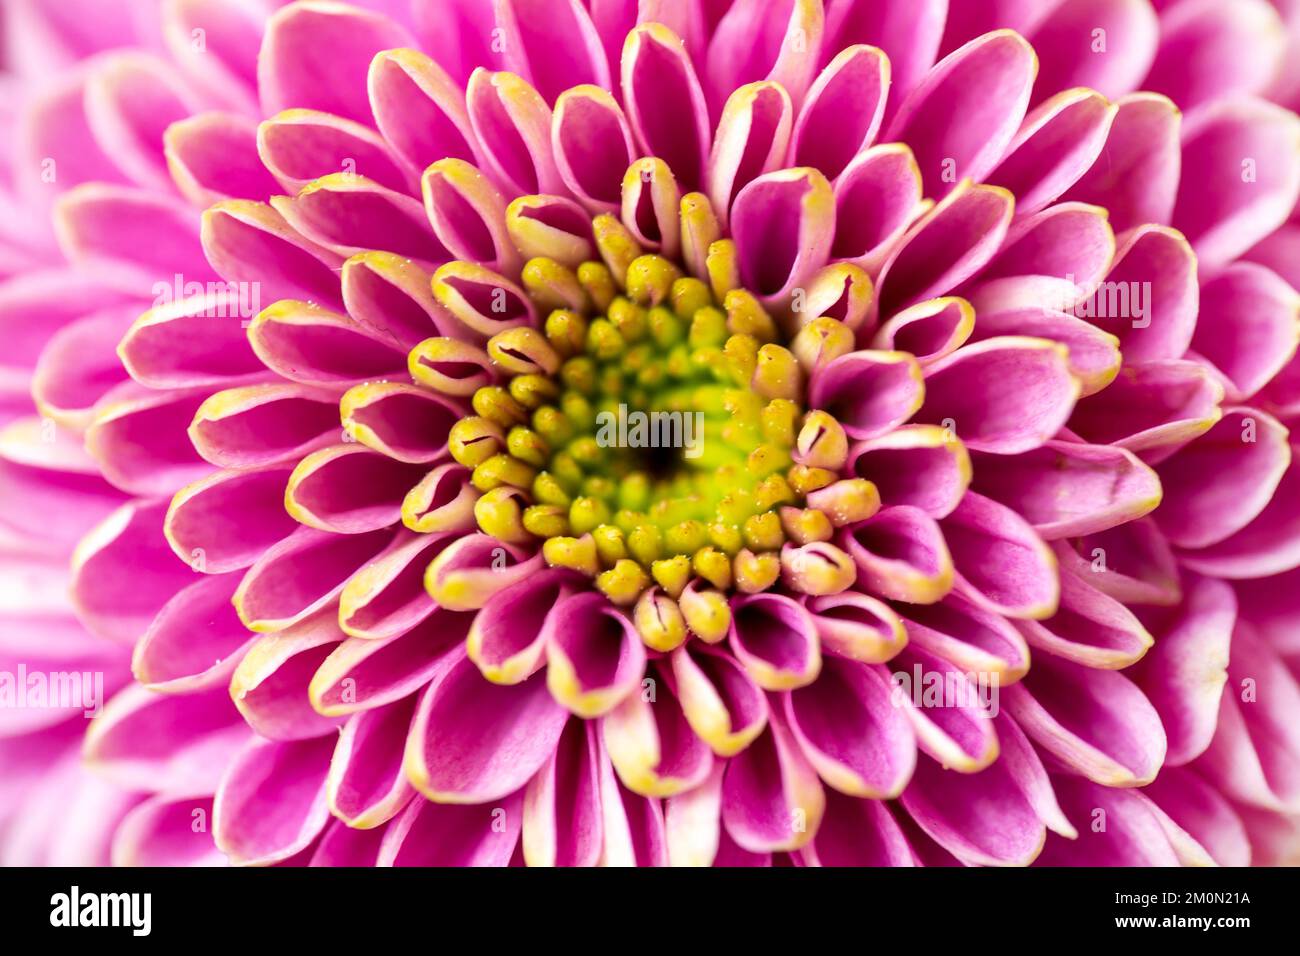 Nahaufnahme einer pinkfarbenen Dalhia-Blume, floraler symmetrischer abstrakter Hintergrund Stockfoto